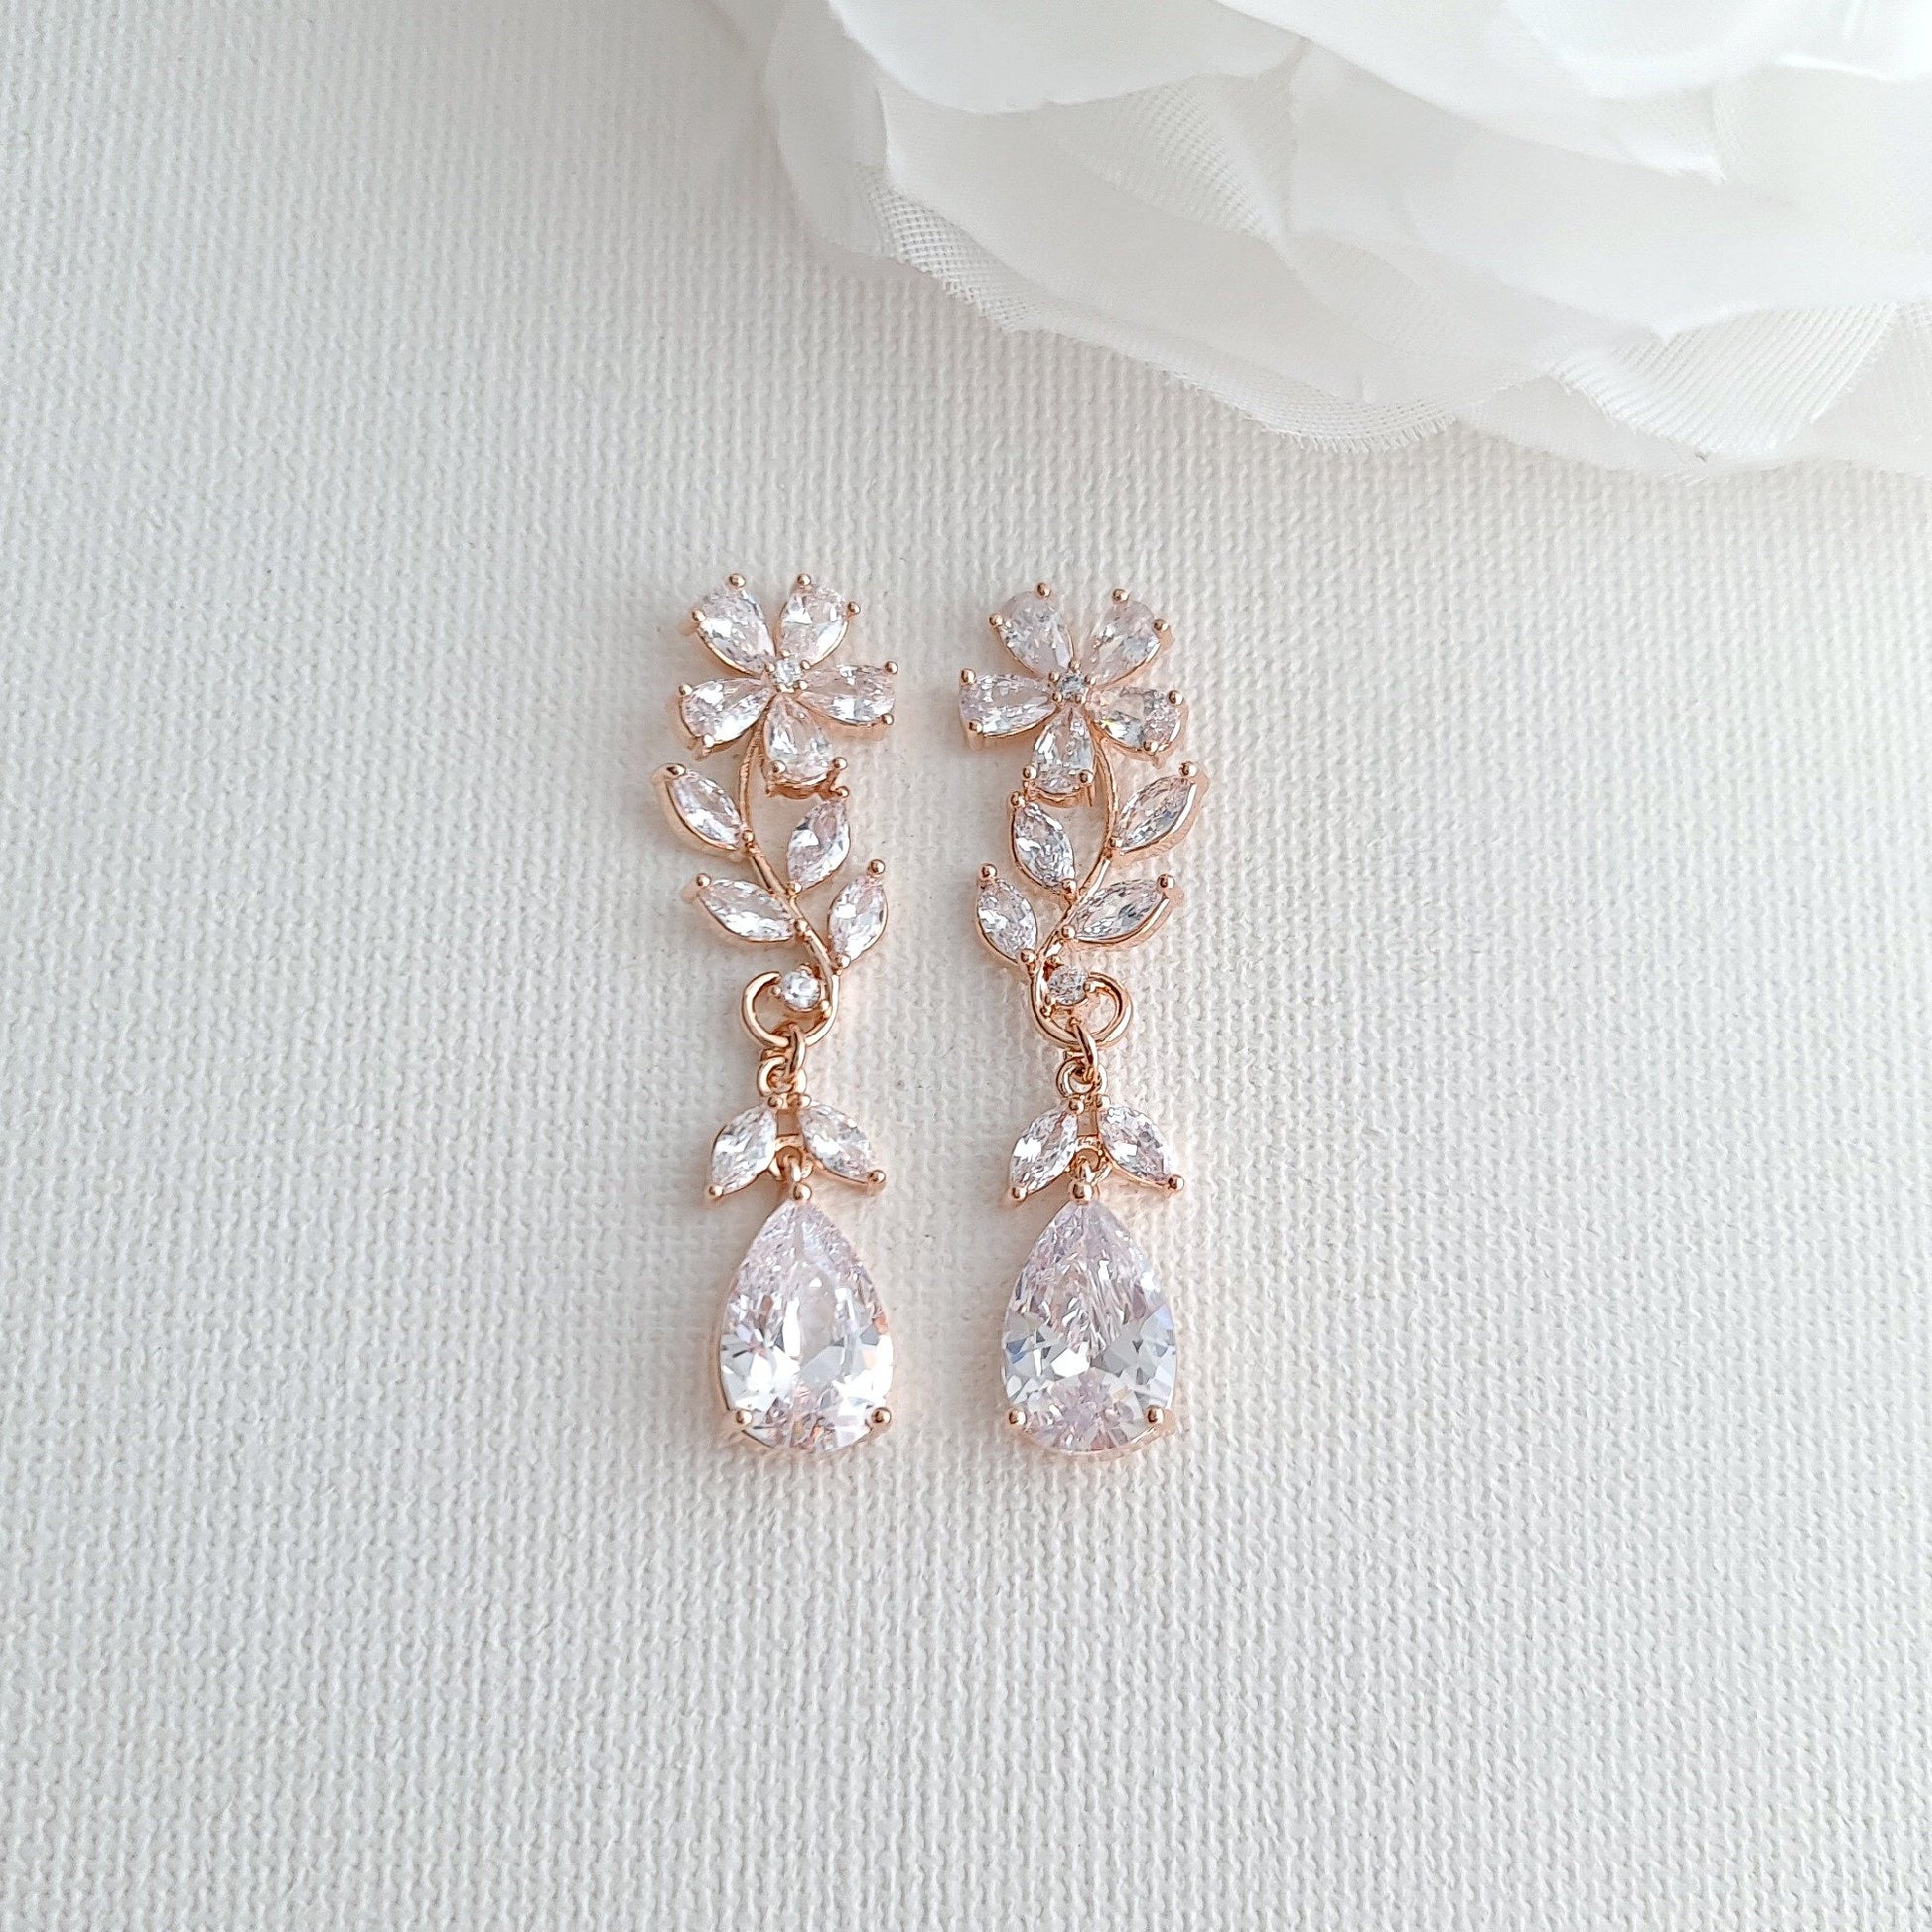 Rose Gold Flower Earrings for Weddings- Daisy - PoetryDesigns